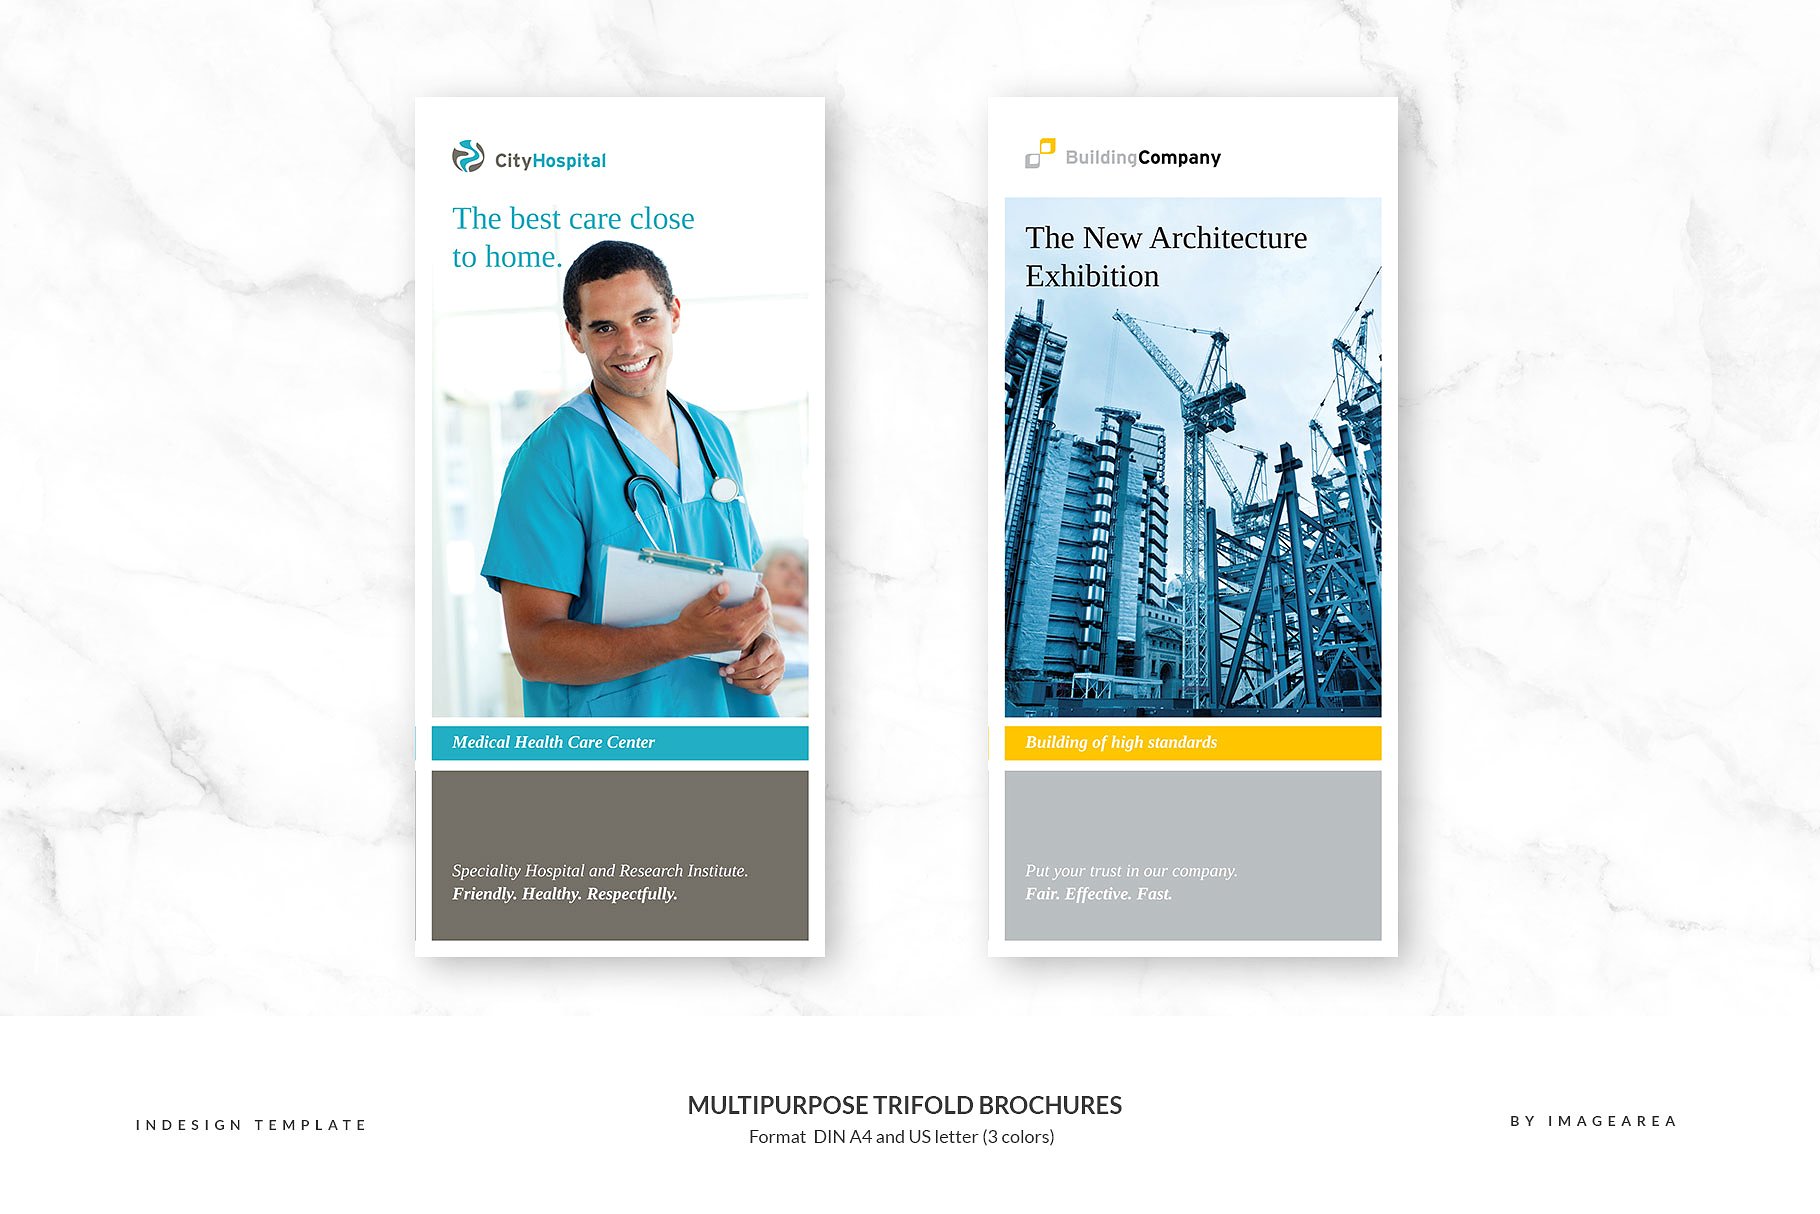 企业商业多用途折页小册子模板 Multipurpose Trifold Brochures插图(1)